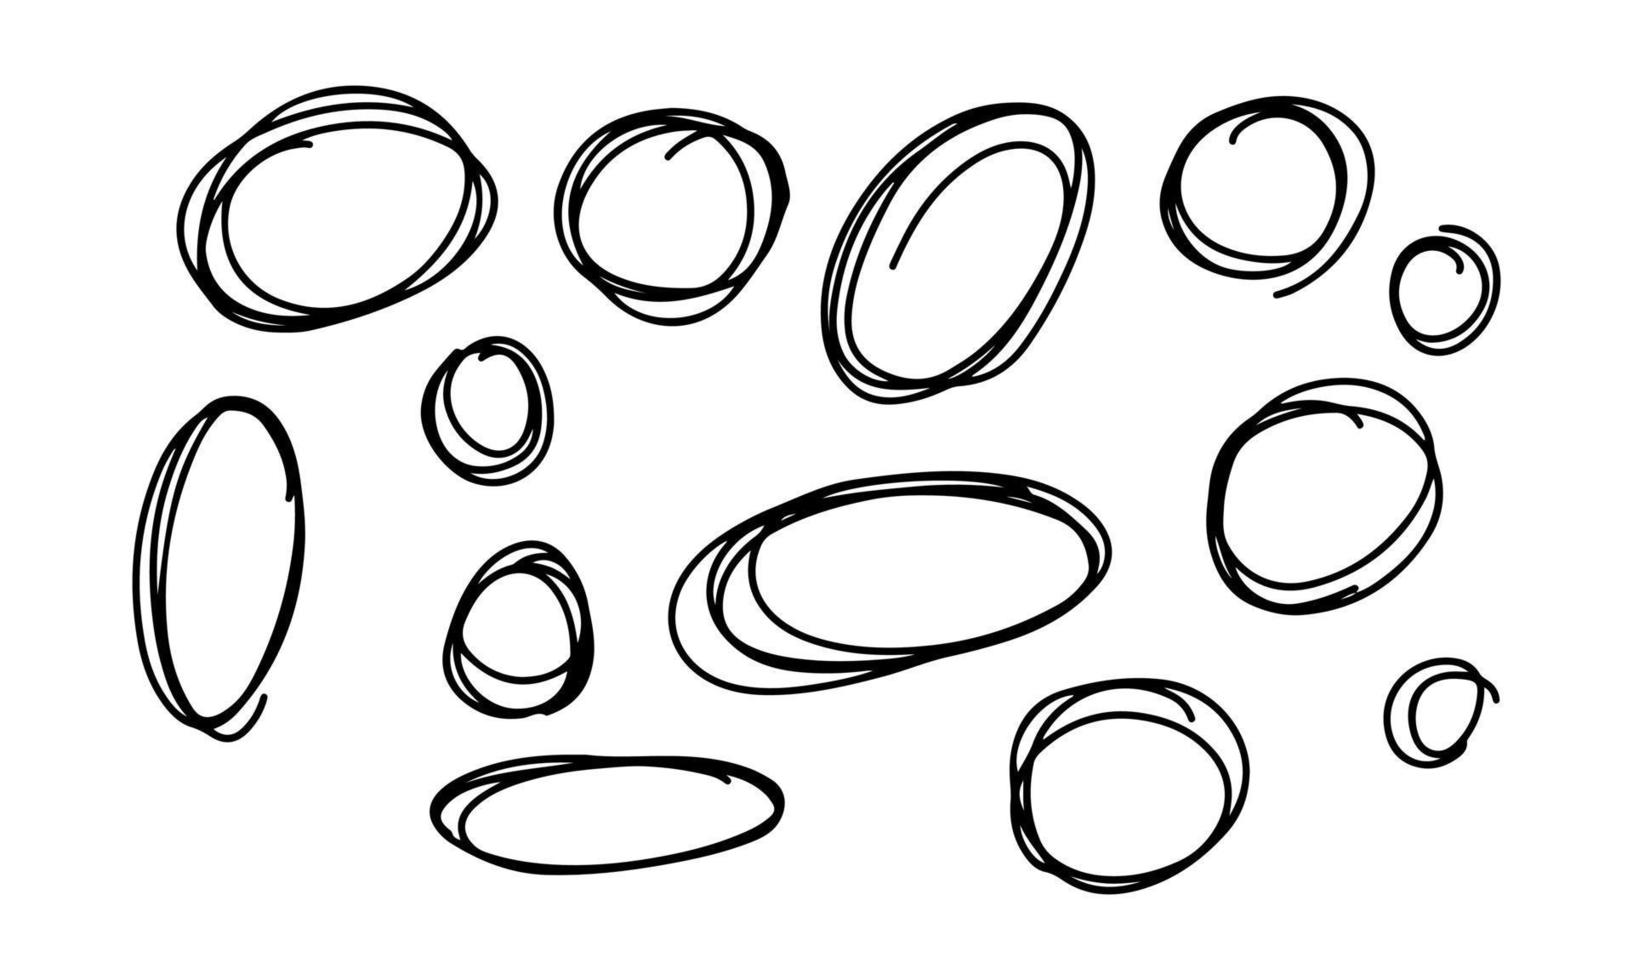 Circular doodle scribbles big set hand drawn. Design elements of outline curved lines ellipse frame. Vector illustration of decorative elements